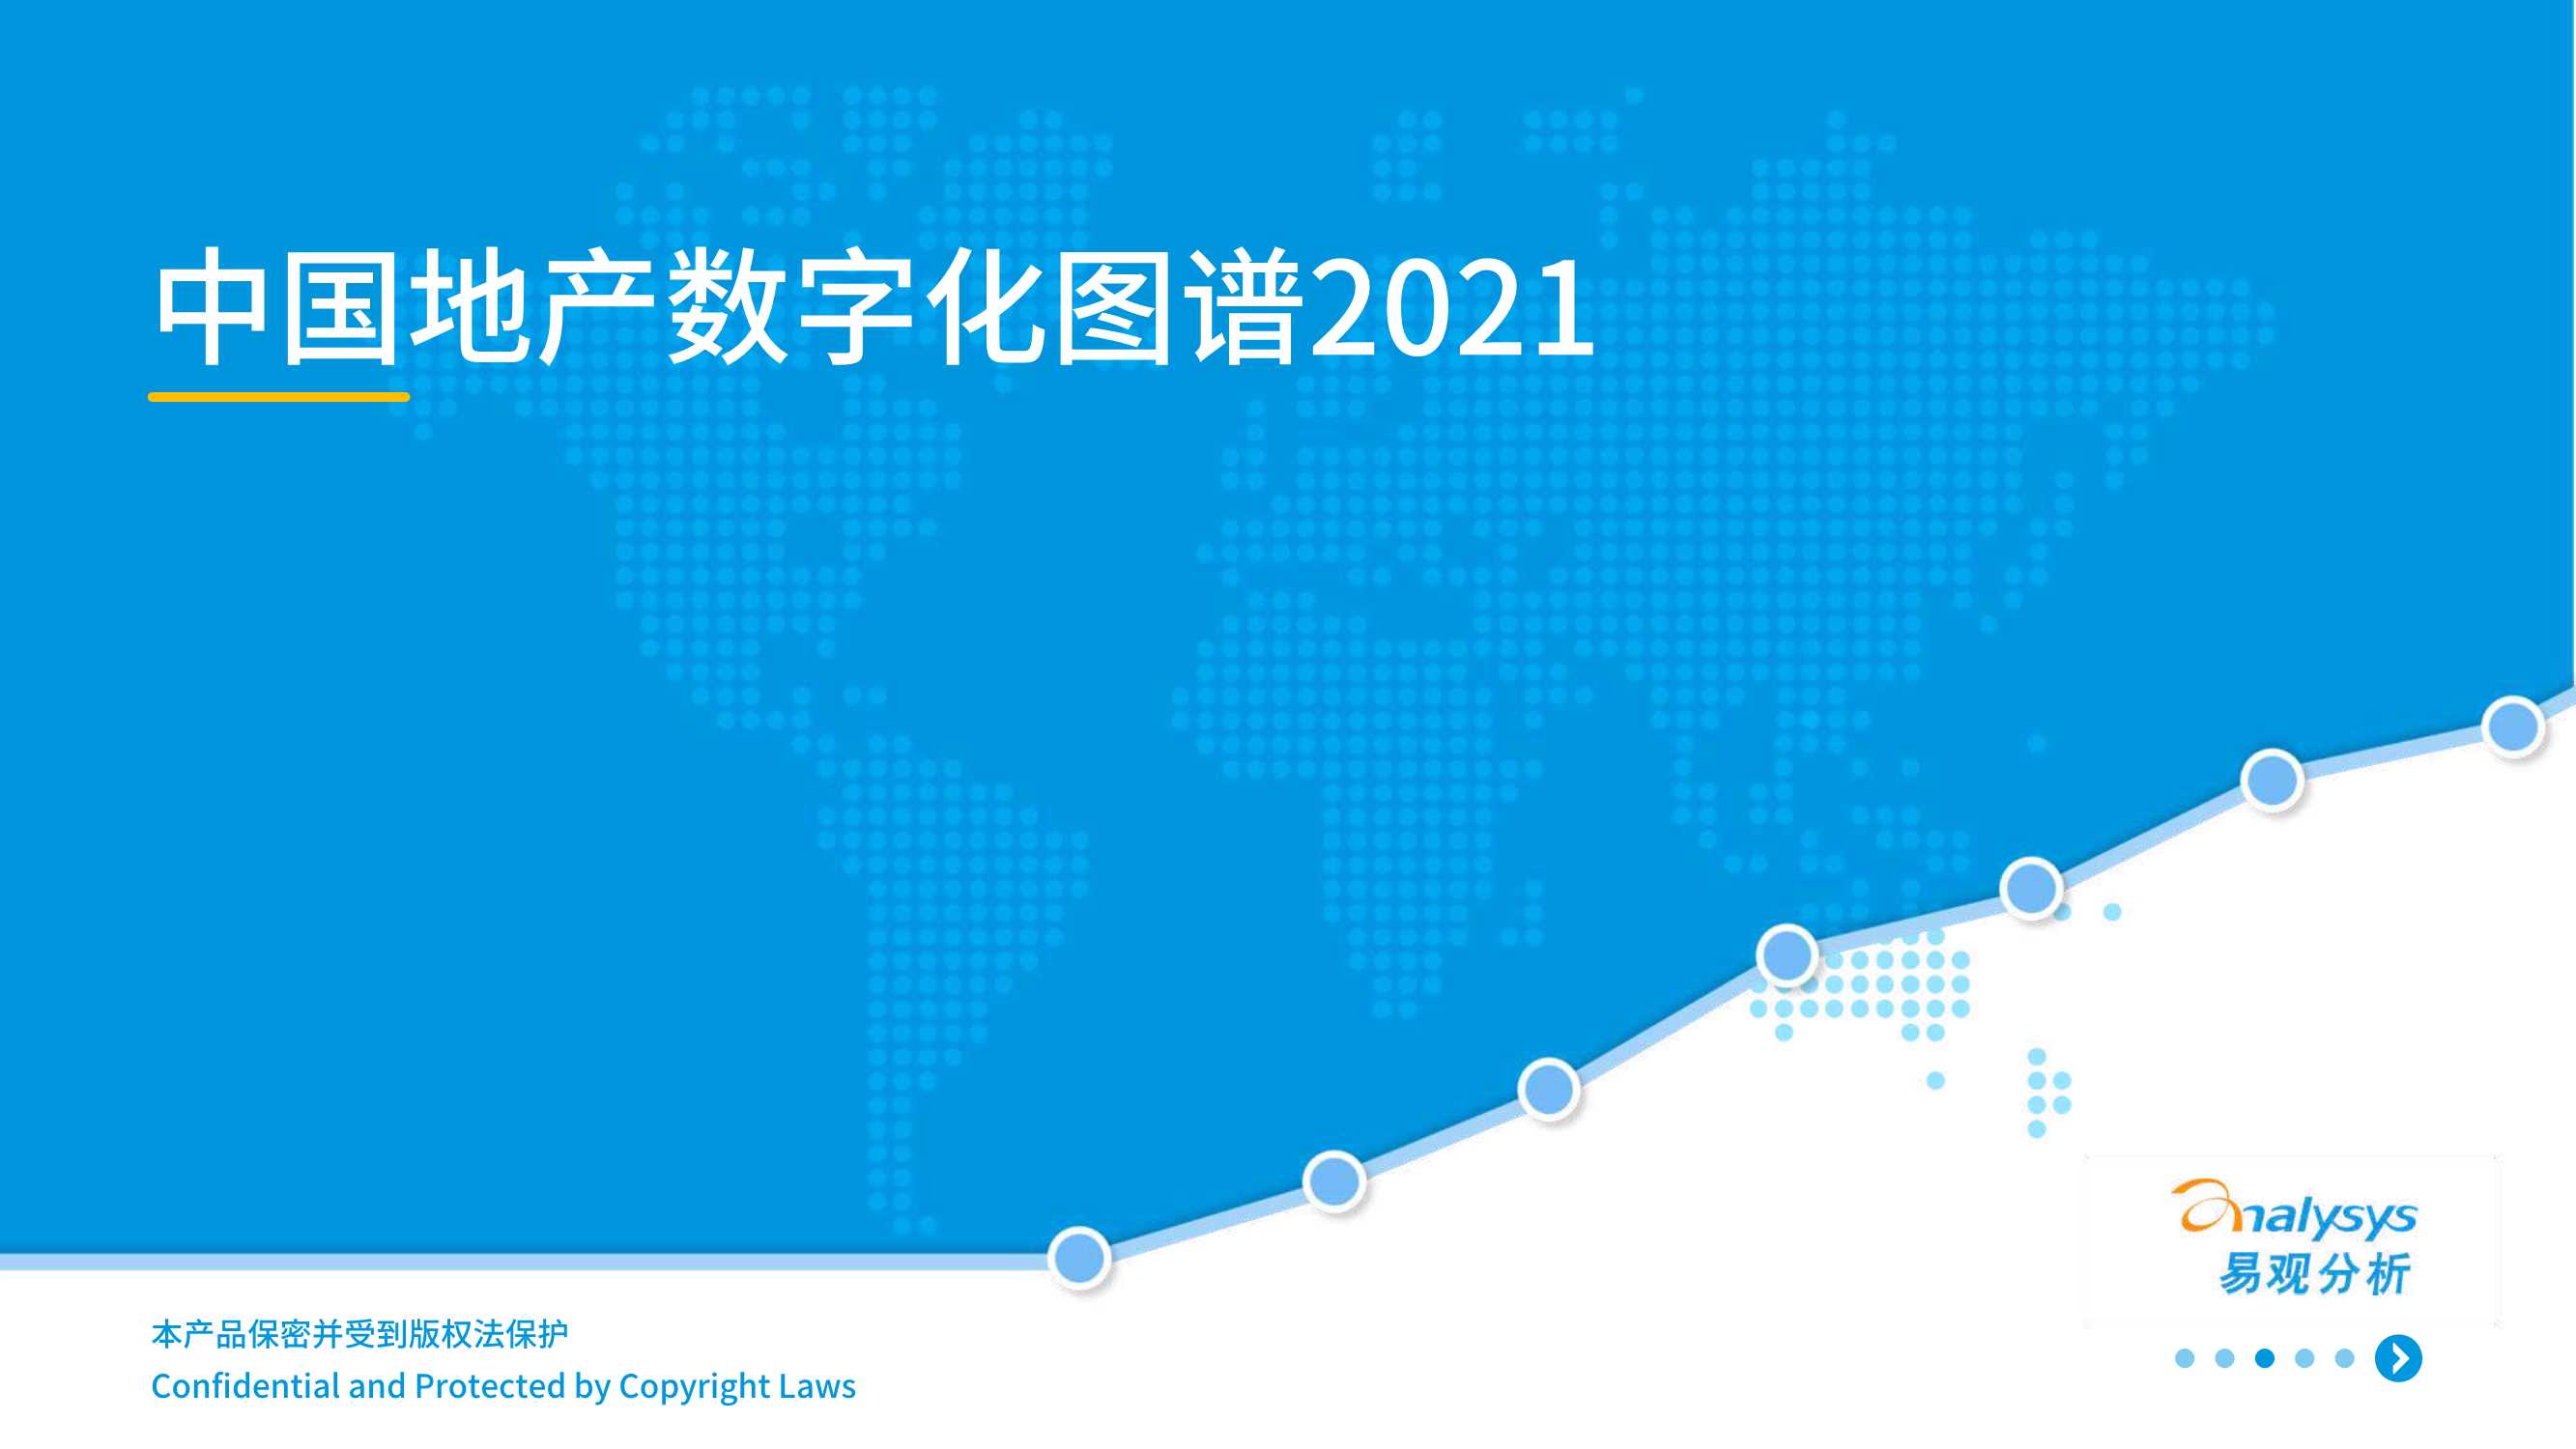 易观-中国地产数字化图谱2021-2021.05-42页